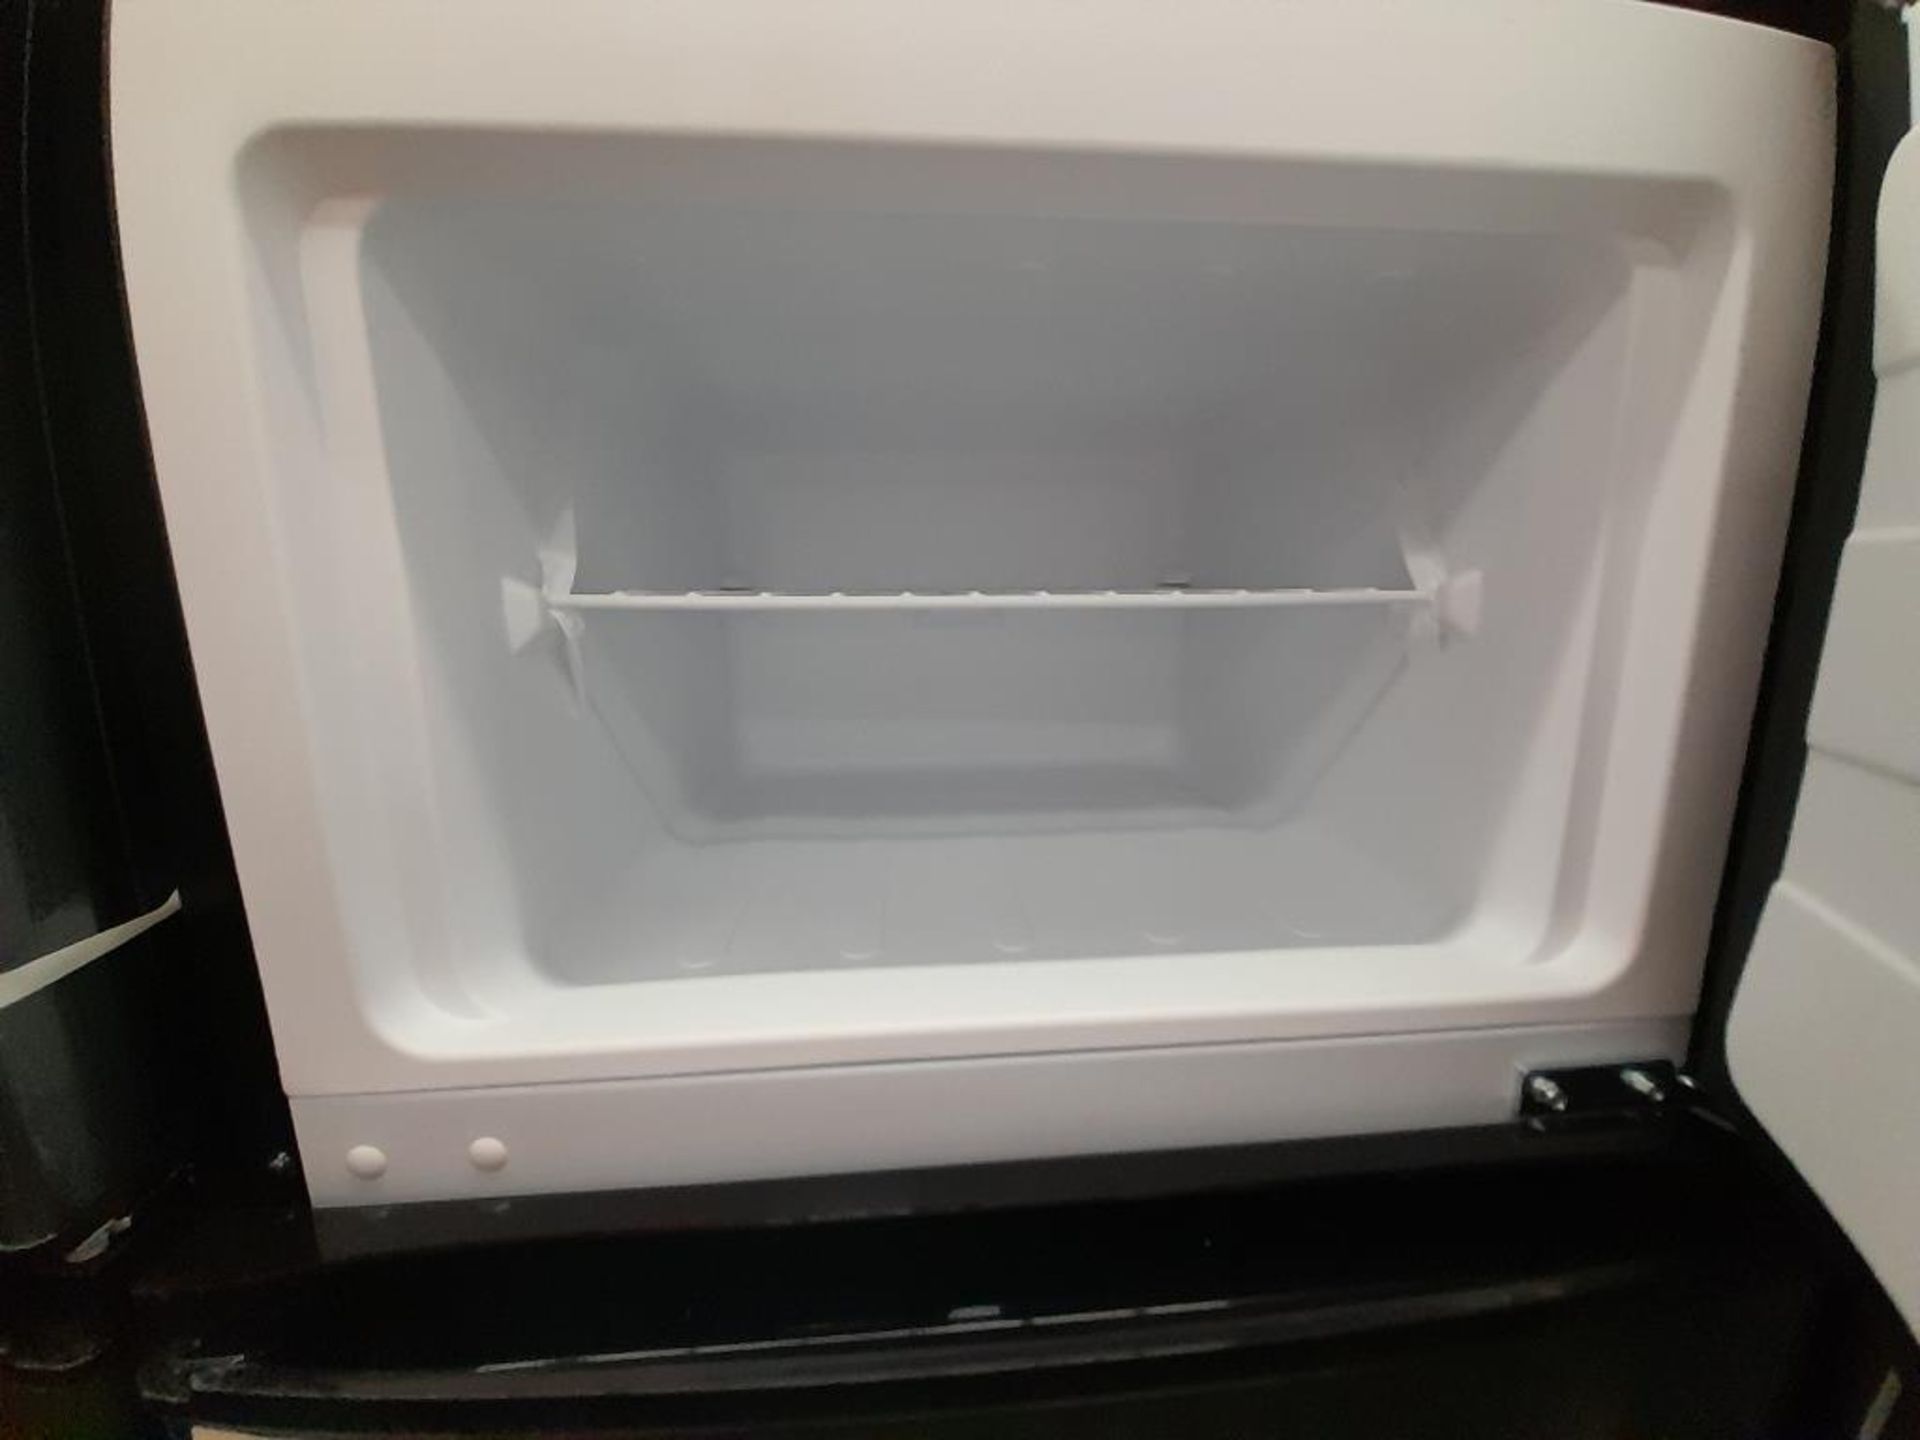 Lote de 3 refrigeradores Contiene: 1 Refrigerador Marca ATVIO, Modelo AT73TMS, Serie ND, Color GRIS - Image 7 of 9